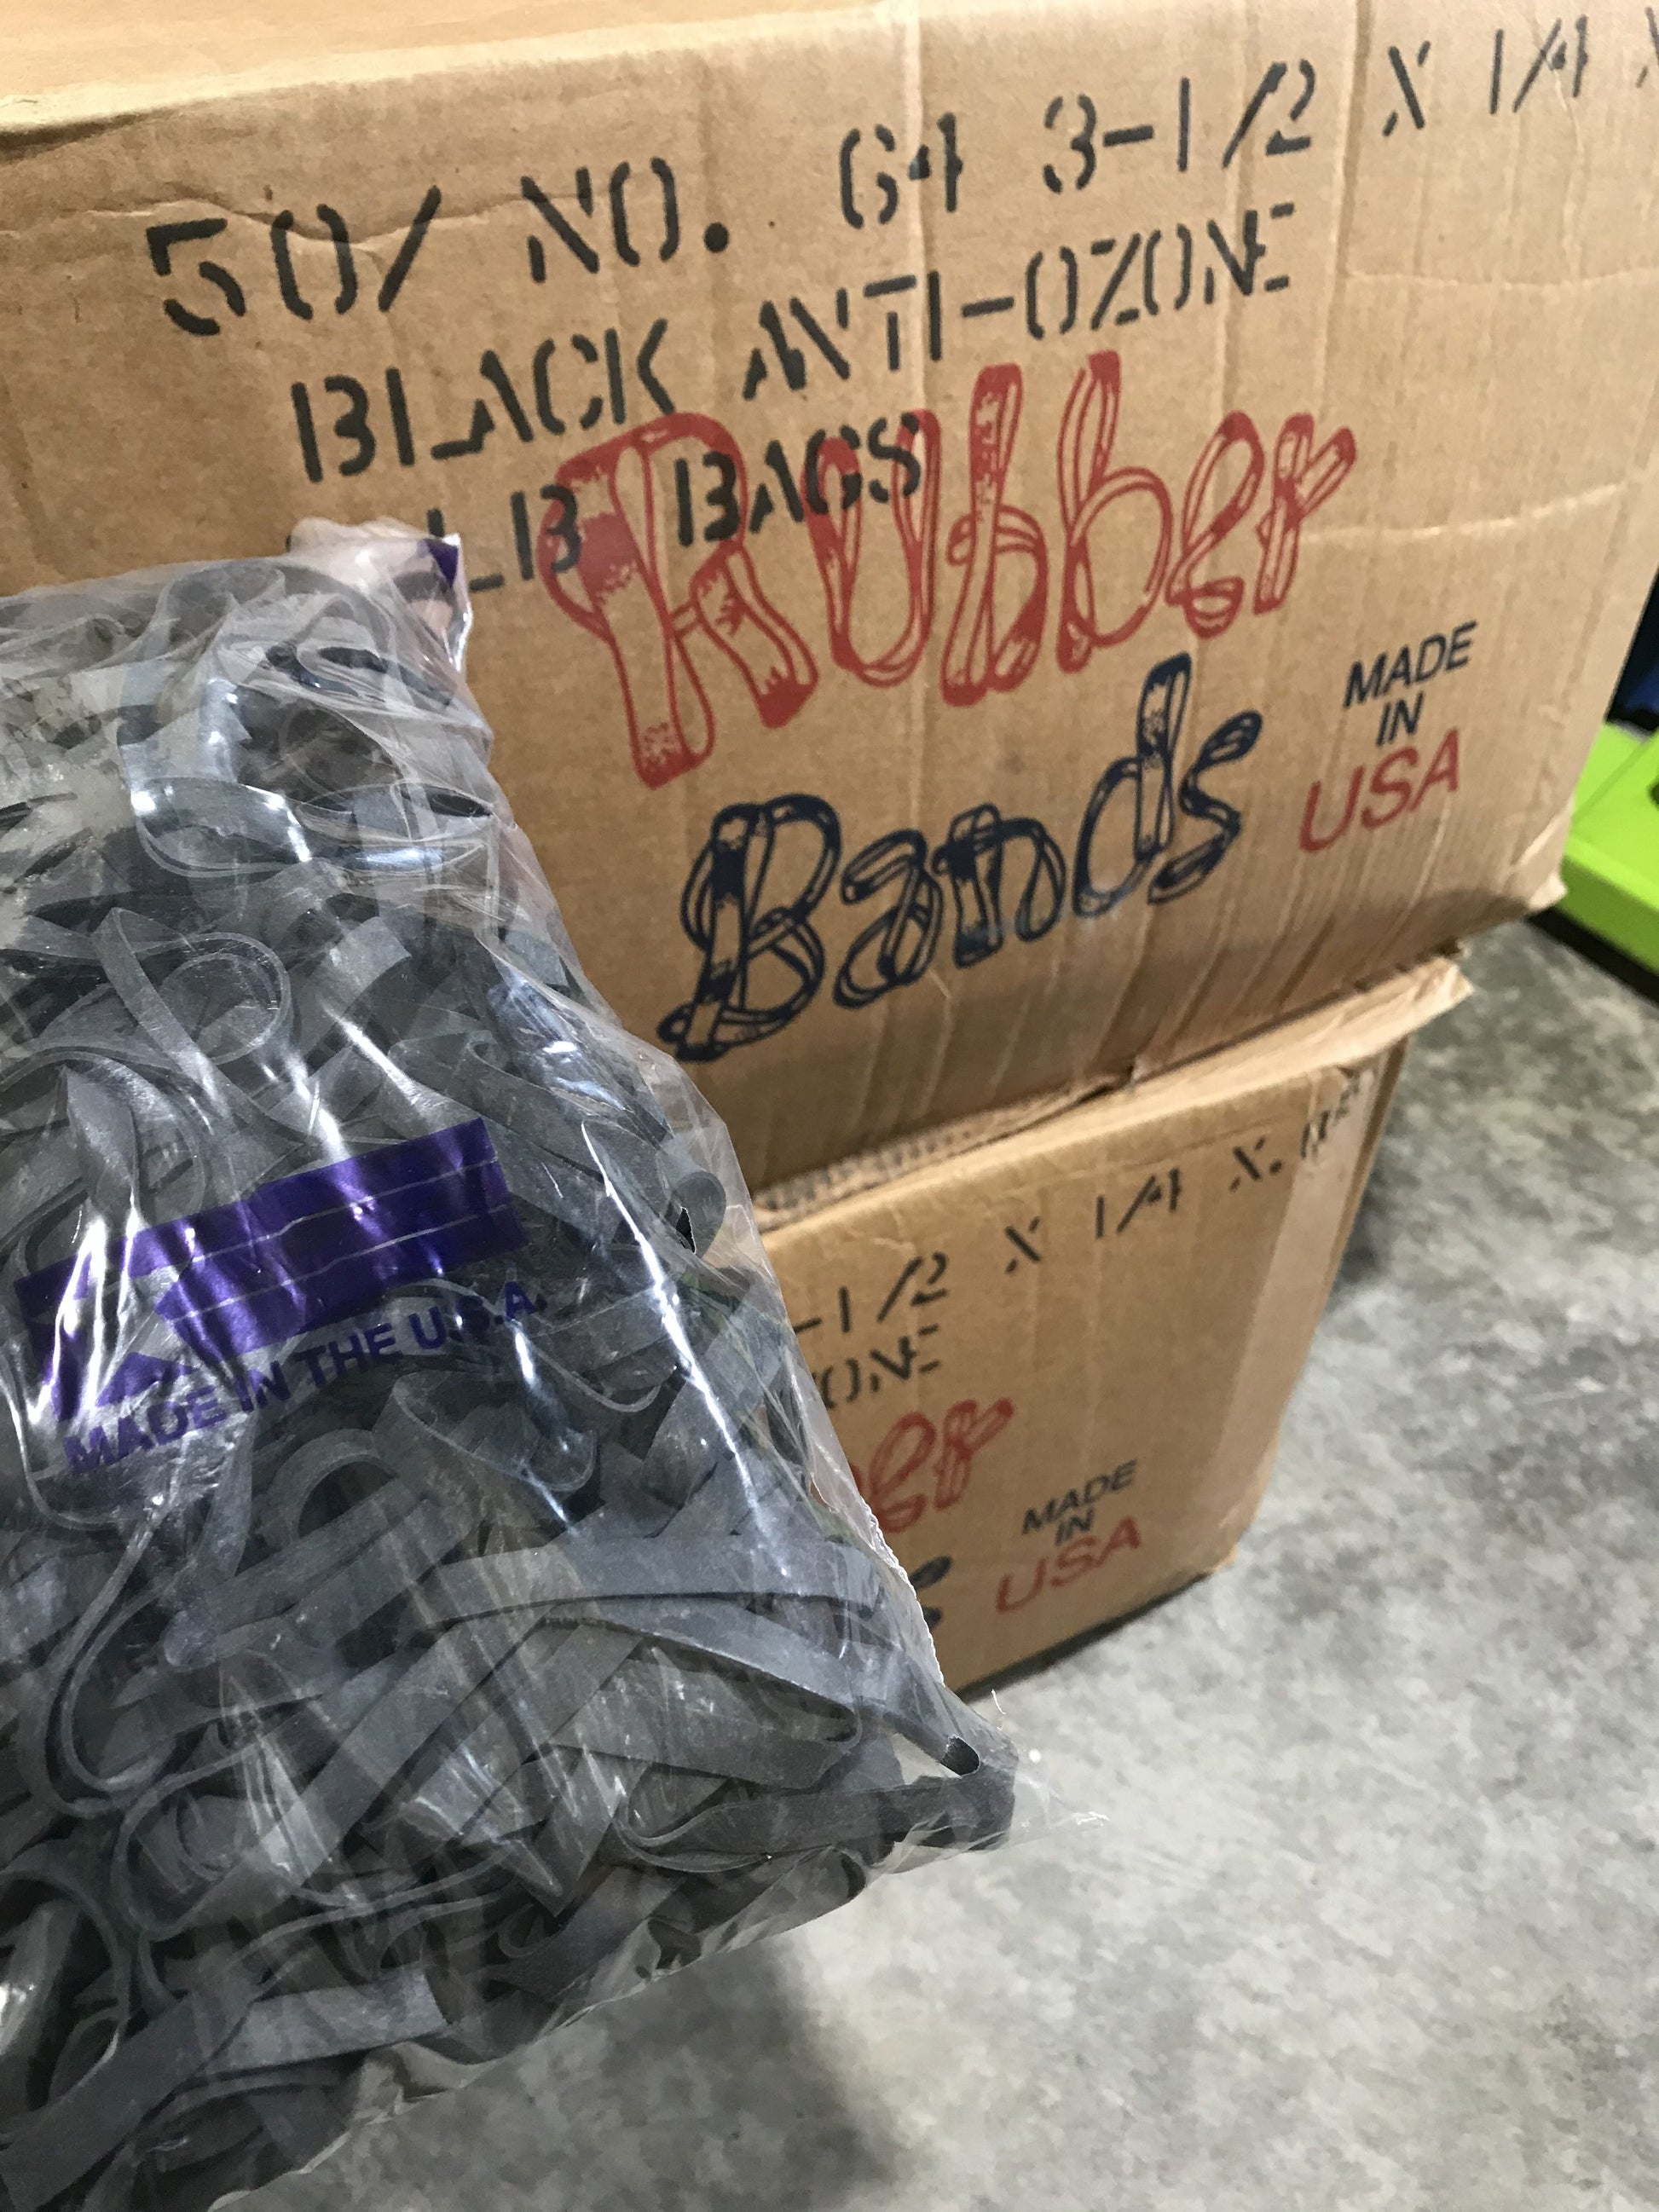 BAND-IT NO. 64 BLACK RUBBER BANDS 1/4 LB BAG